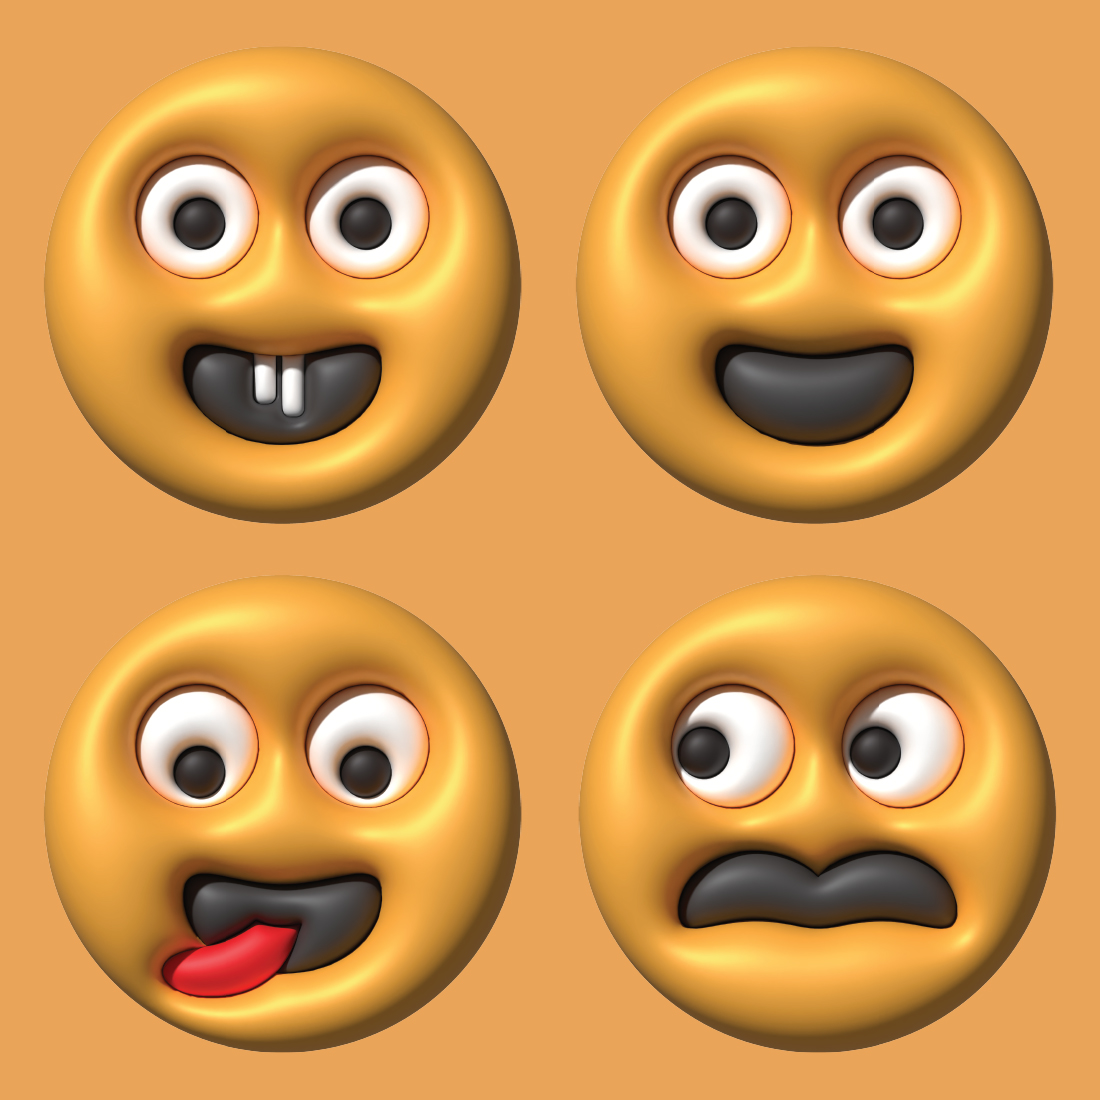 3D Emoticon Bundles preview image.